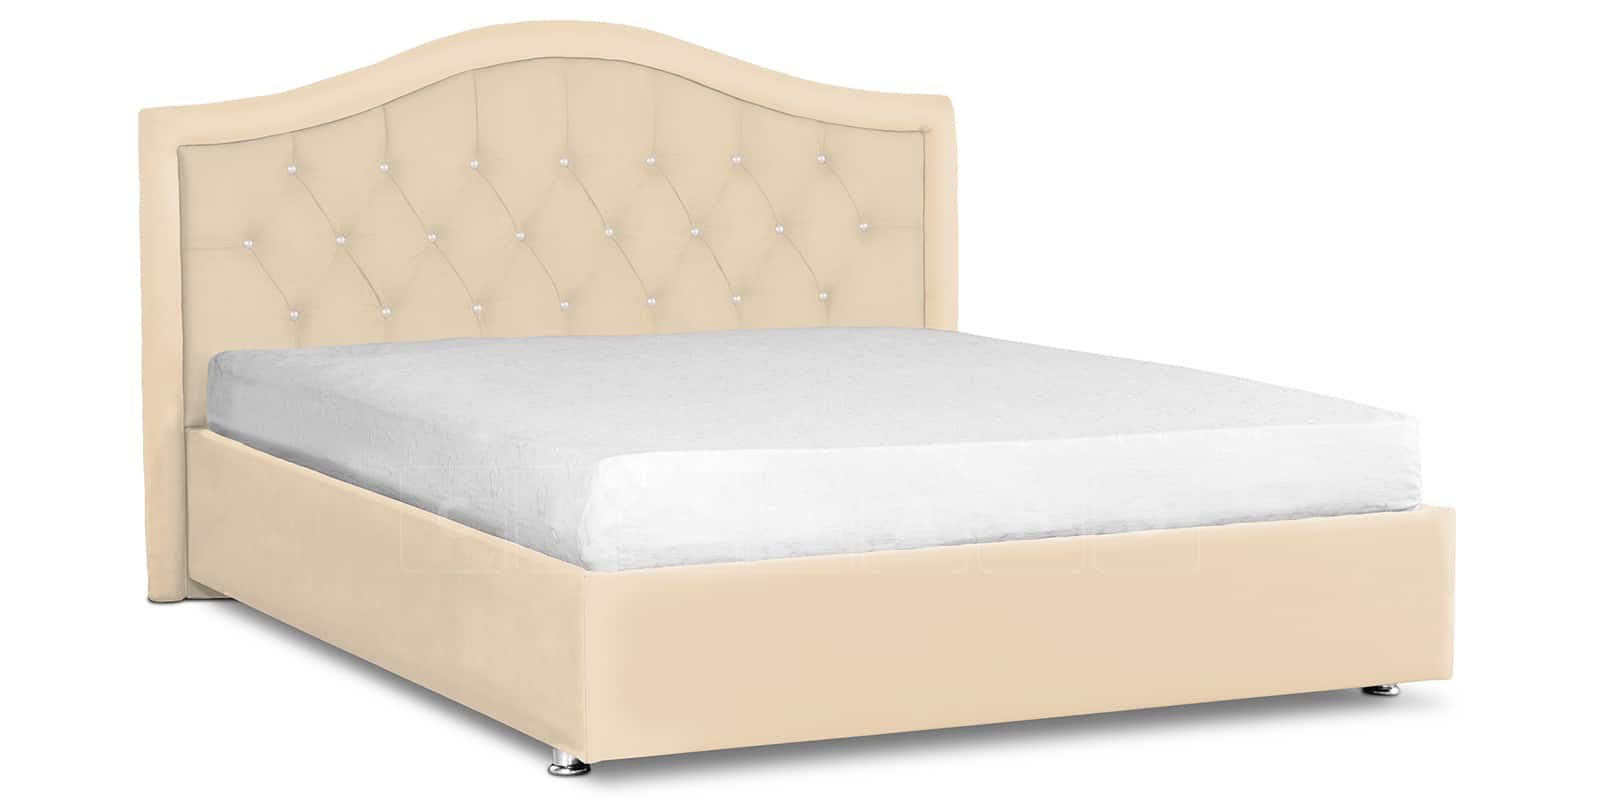 Мягкая кровать Малибу 160 см экокожа бежевый вариант 9-2 фото 1 | интернет-магазин Складно